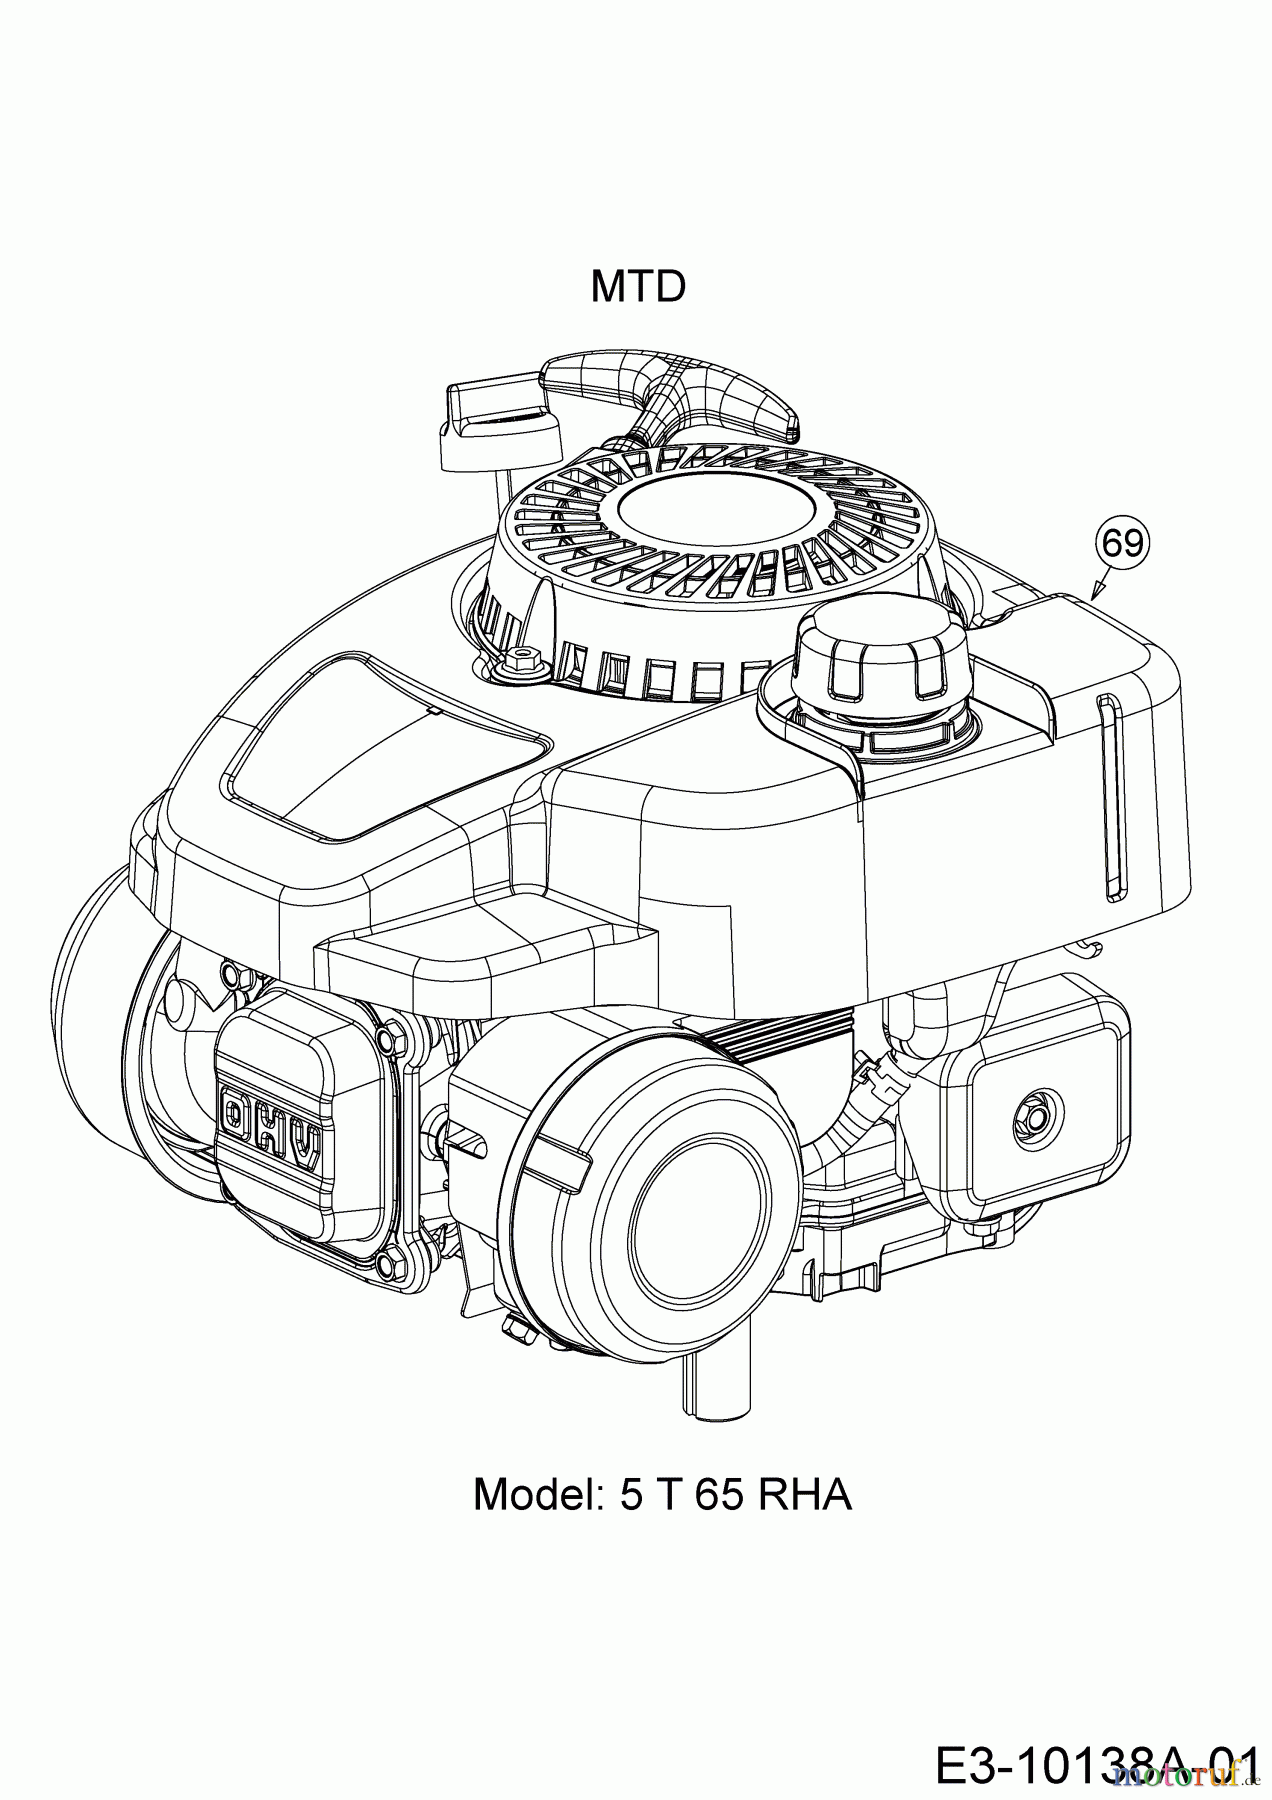  WOLF-Garten Expert Petrol mower Expert 420 11B-LUSC650   (2018) Engine MTD